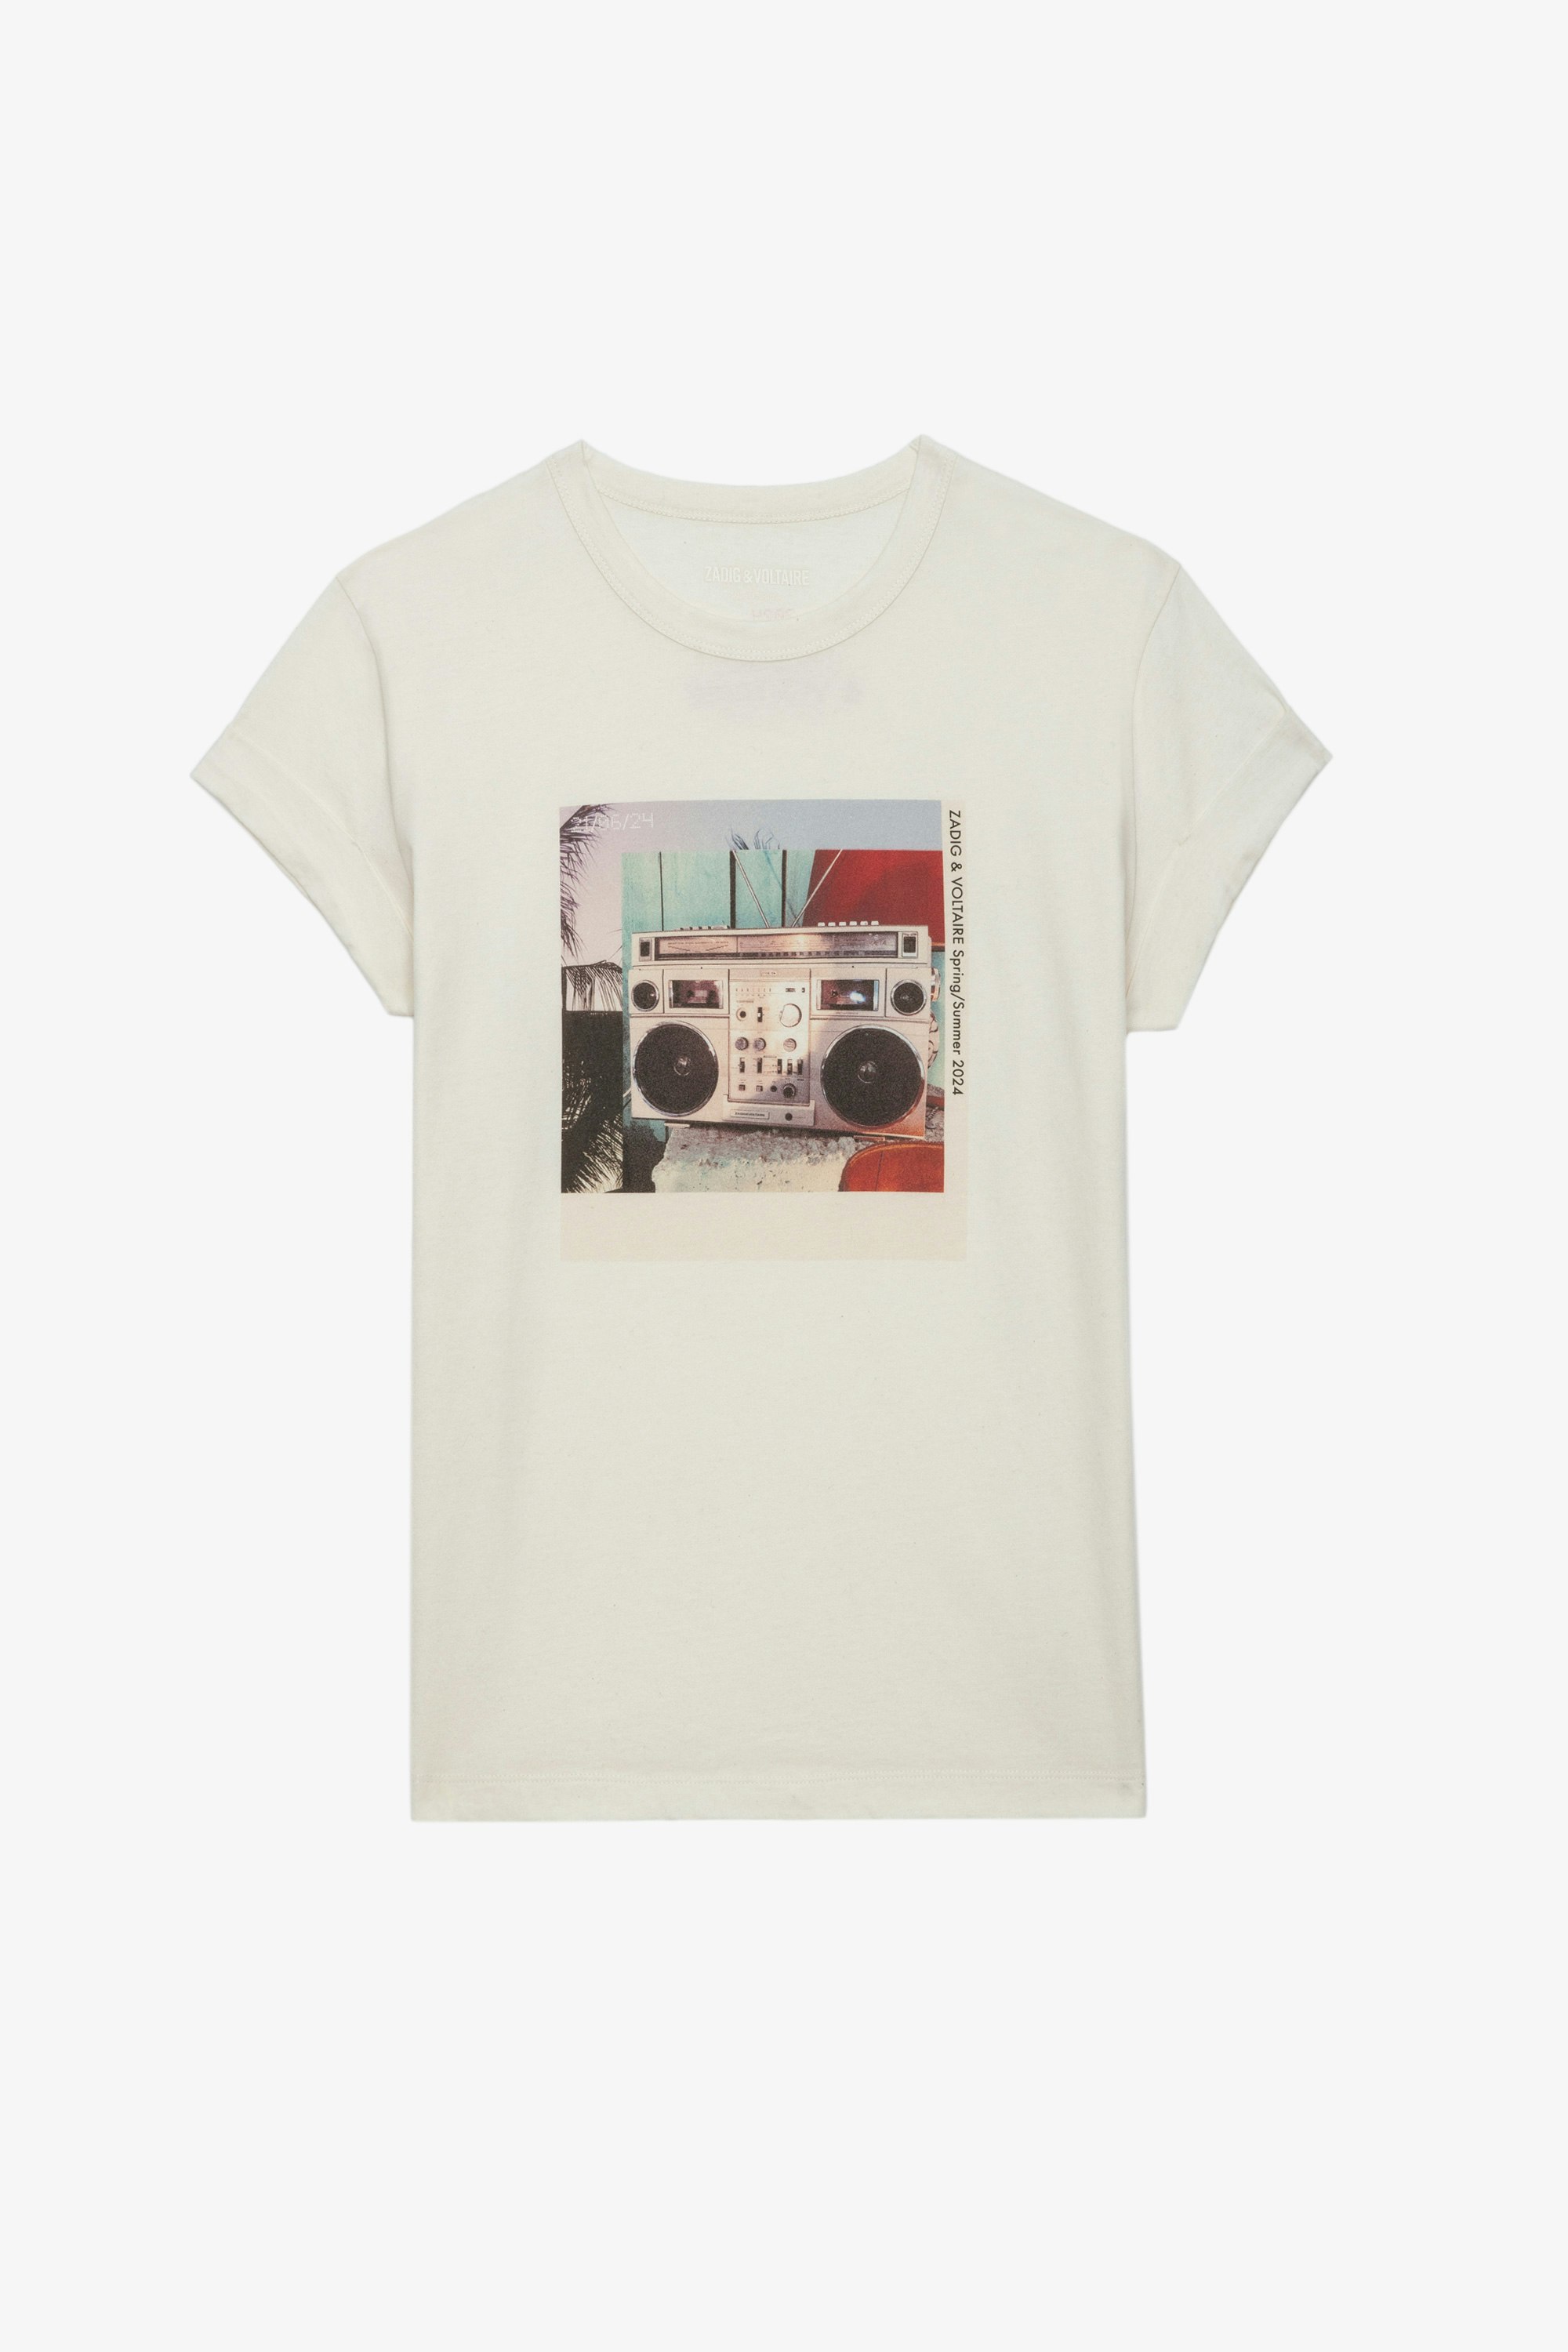 Camiseta Anya Estampado Fotográfico - Camiseta blanca de algodón con mangas cortas y estampado fotográfico Ghetto Blaster.